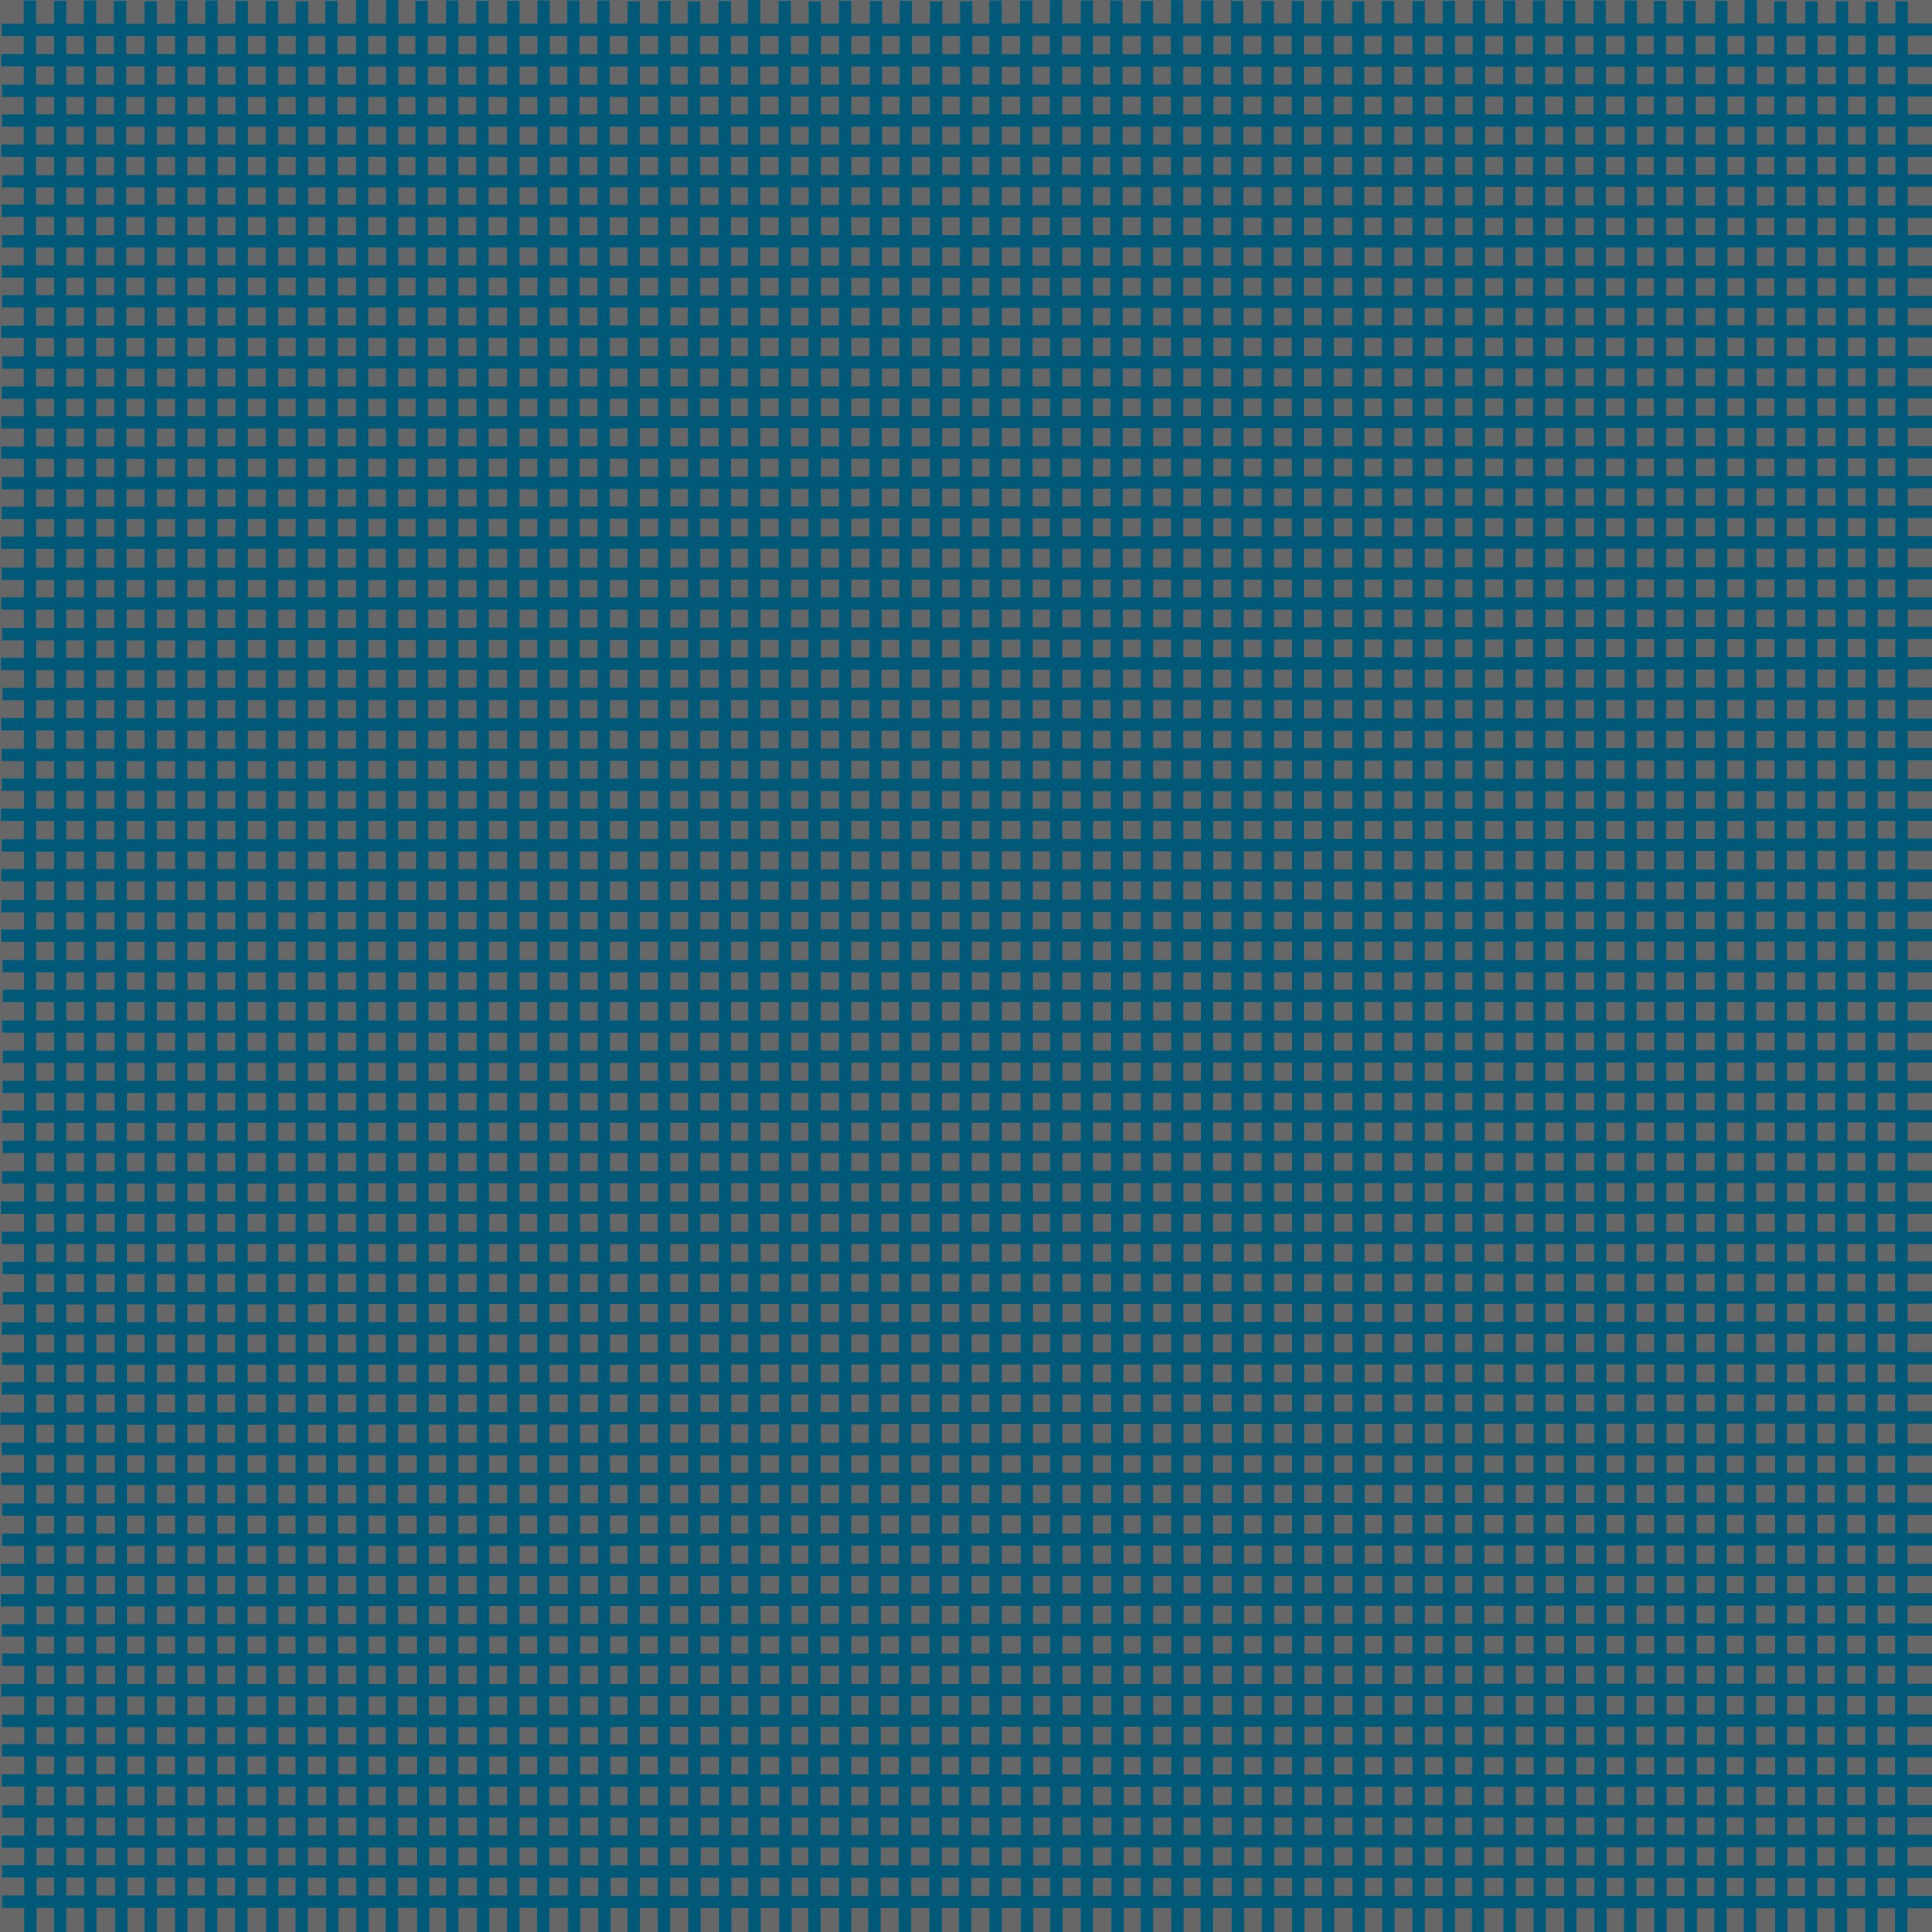 small grid 6 (prussian blue).jpg